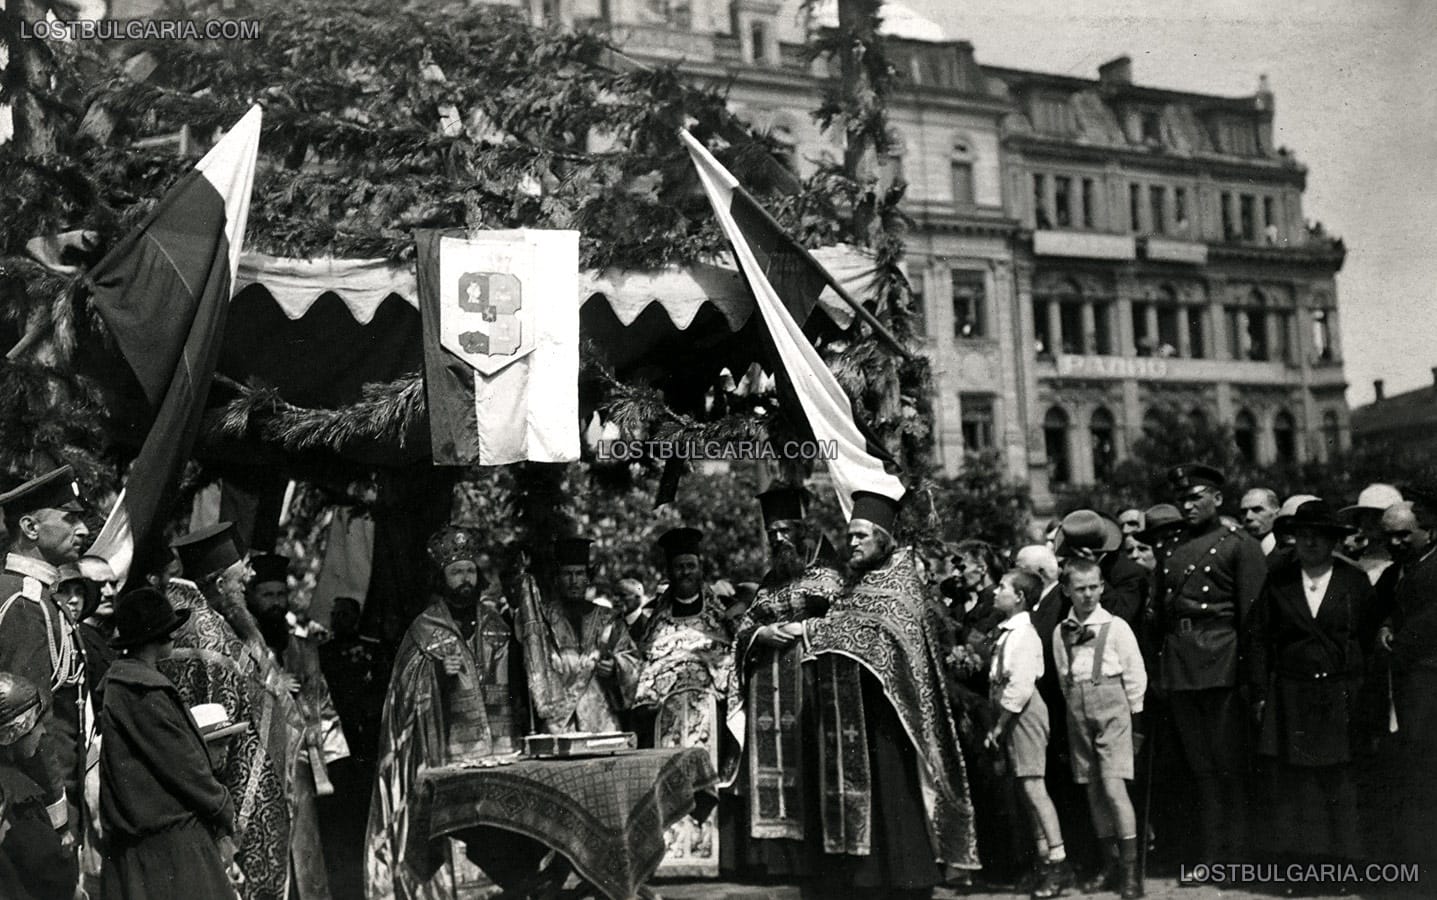 Отслужване на света литургия по случай деня на София, площад "Александър I", 30-те години на ХХ век